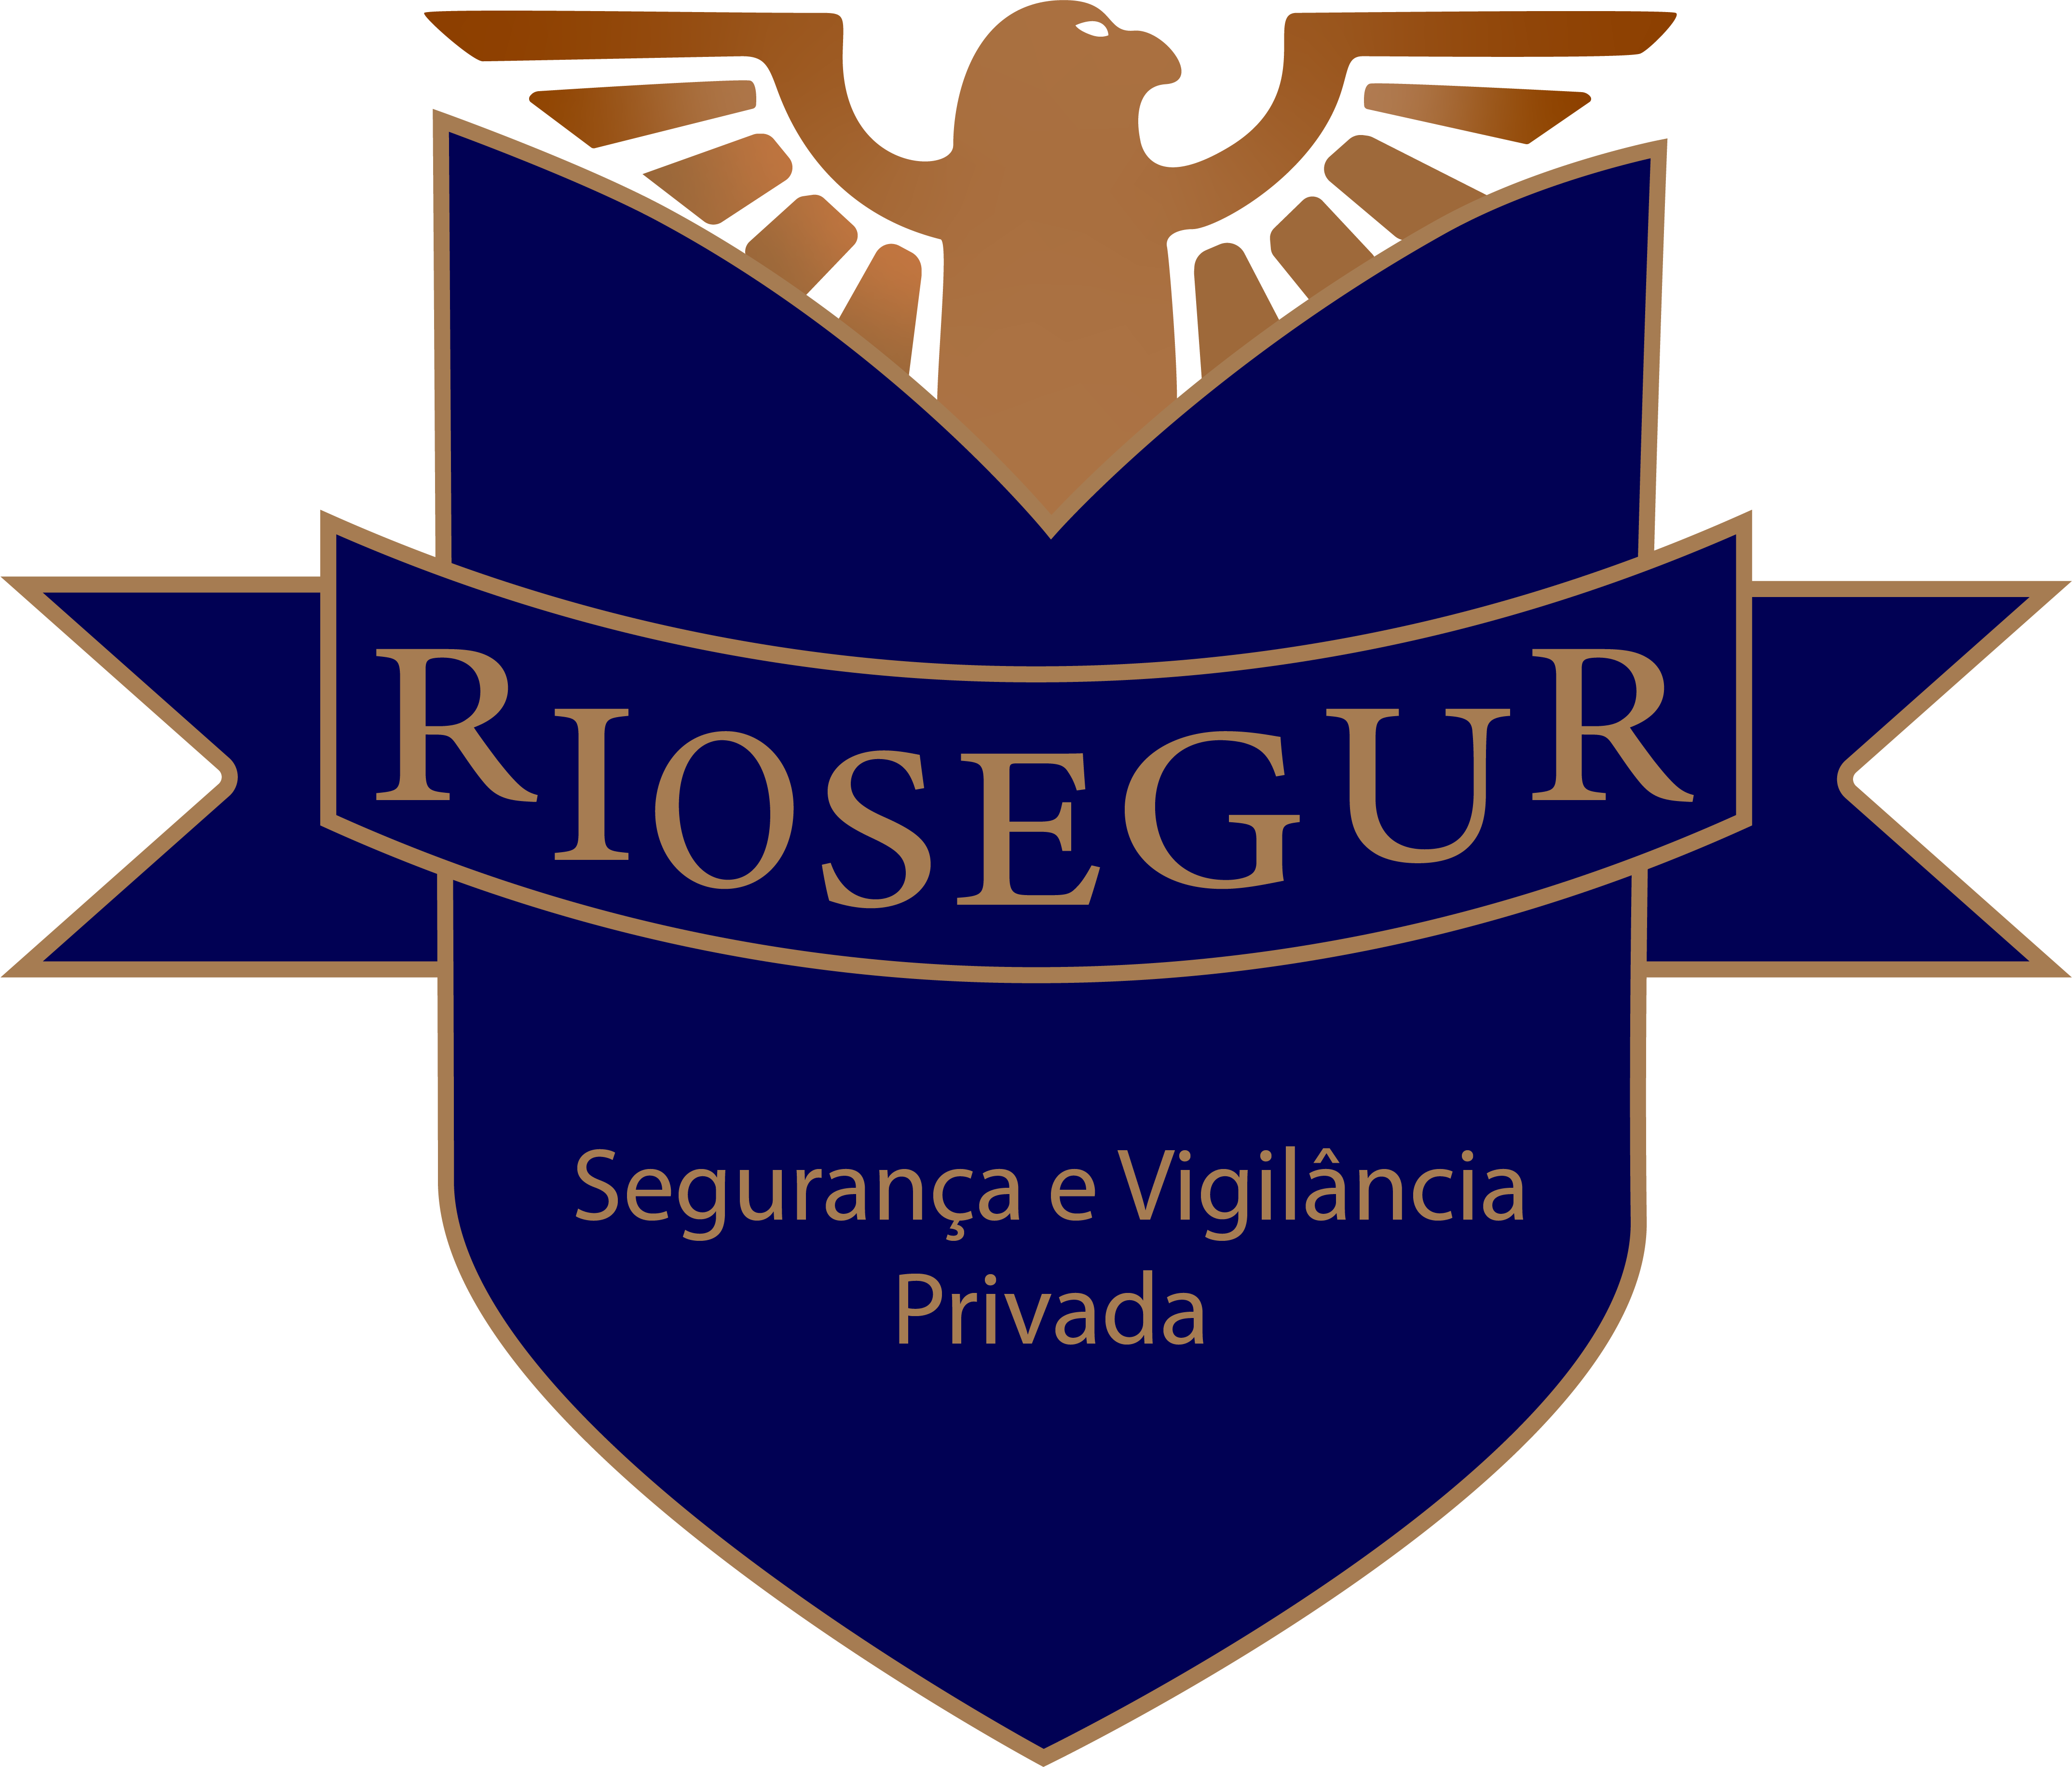 Riosegur – Segurança e Vigilância privada